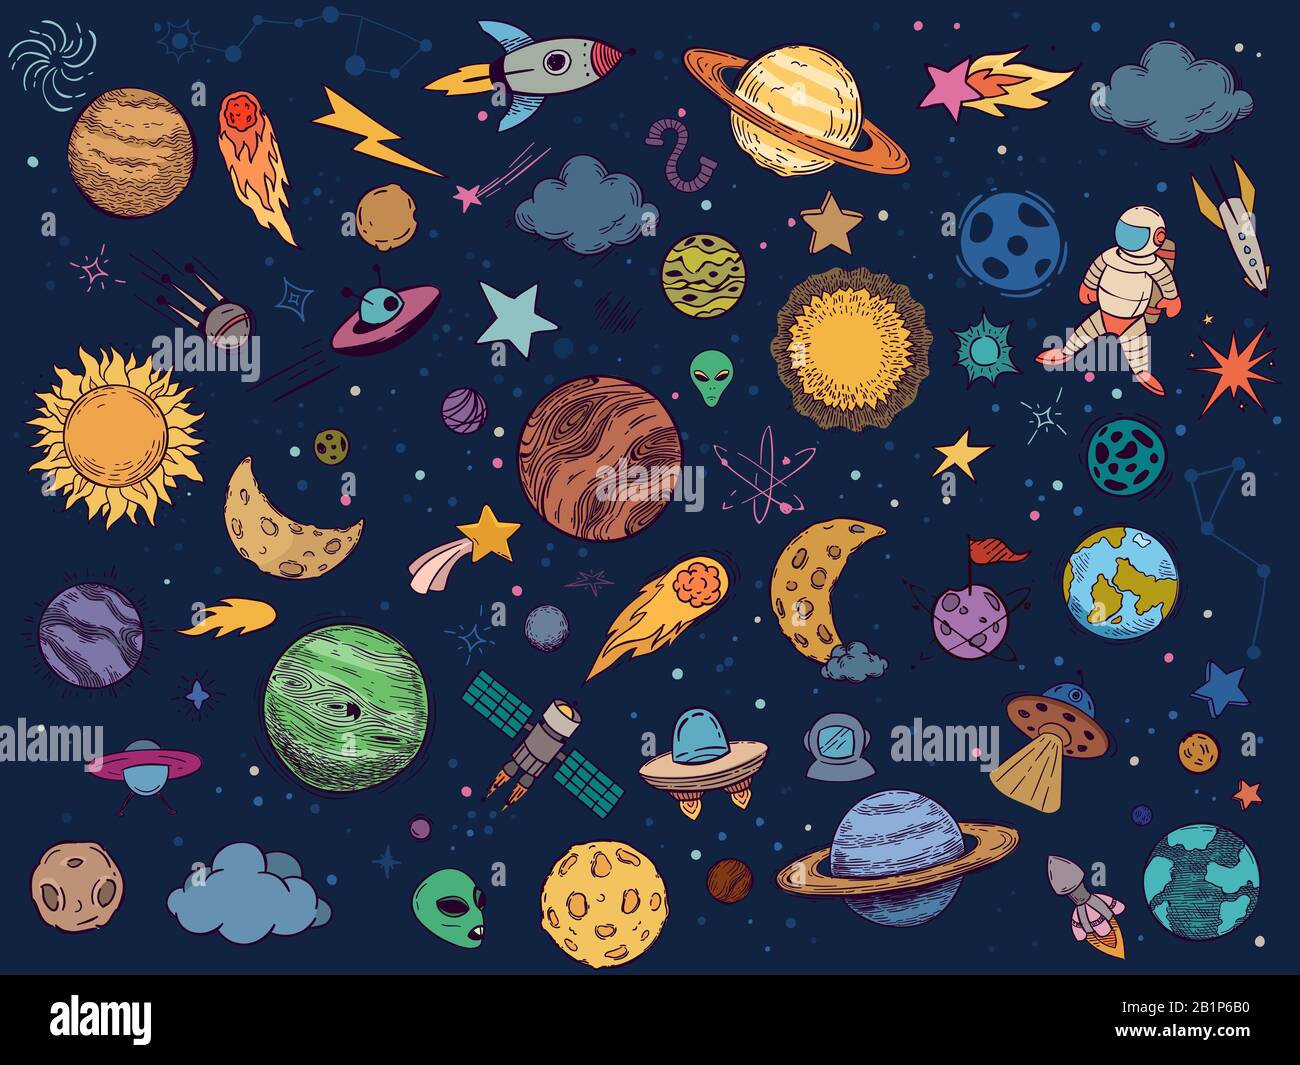 Barboncino dello spazio colore. Astrologia pianeti, spazio colorato e disegno a mano vettore razzo insieme di illustrazione. Confezione di adesivi cosmici in stile cartone animato. Celeste Illustrazione Vettoriale